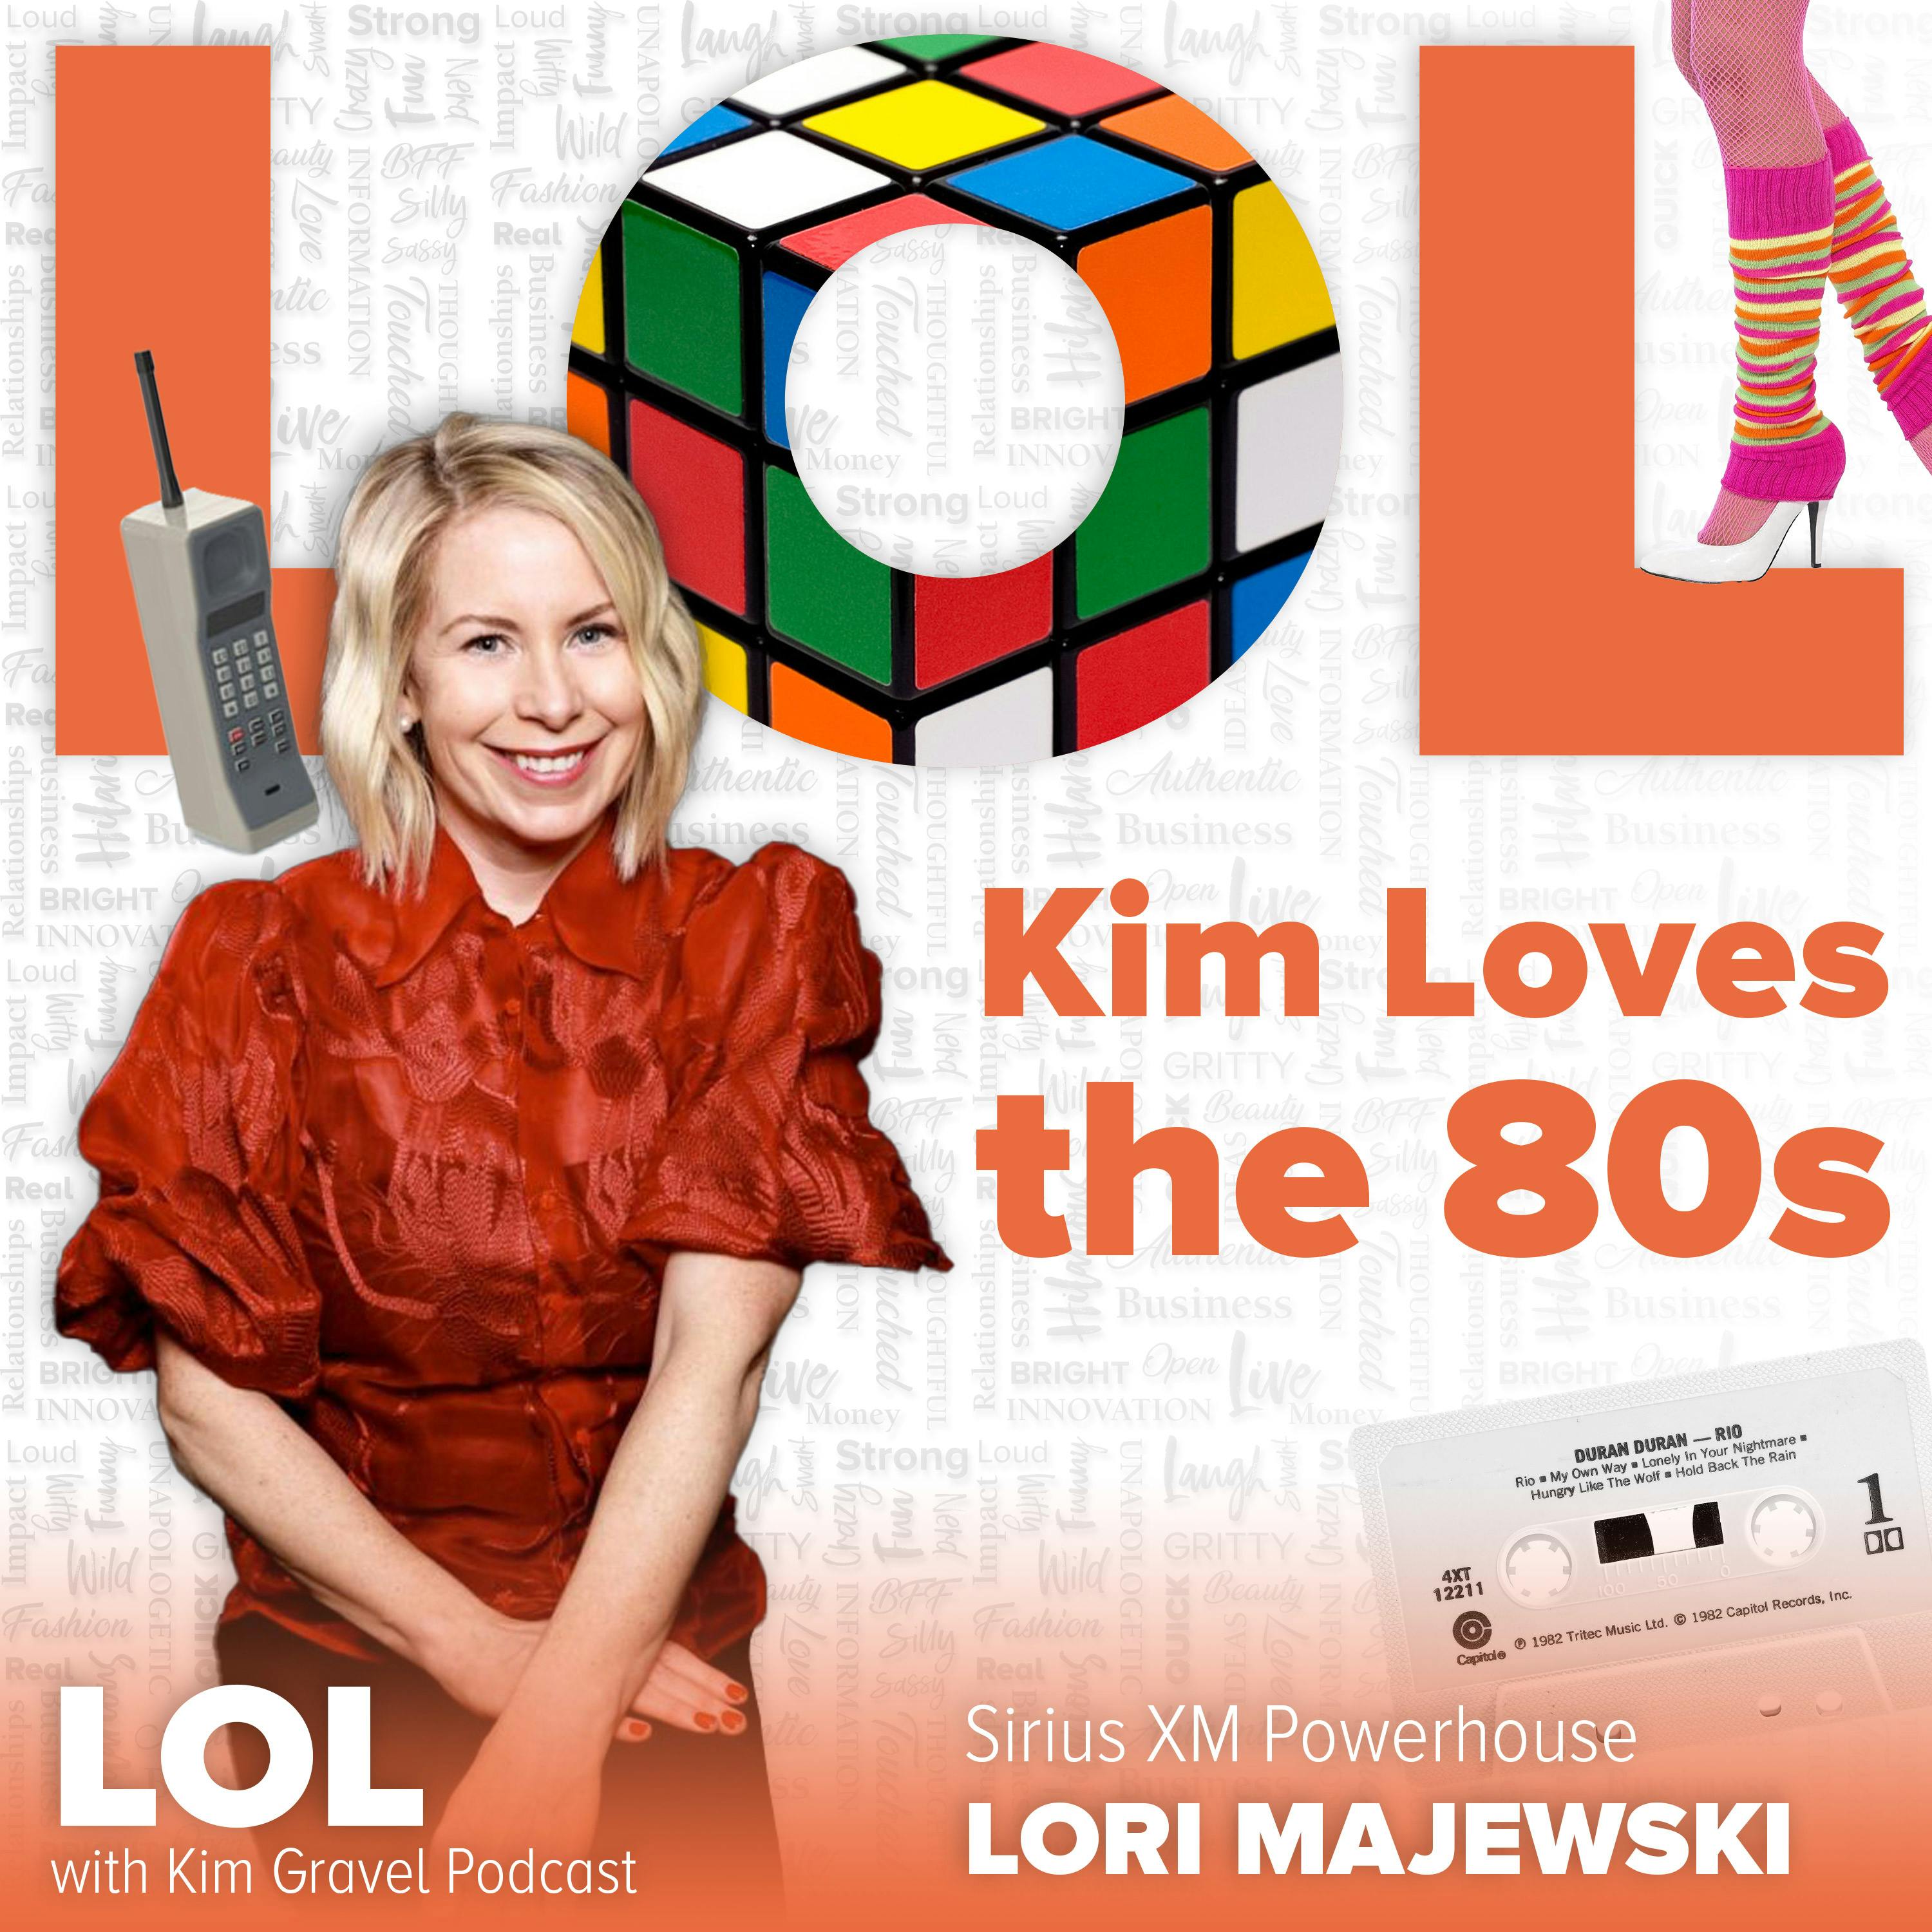 Kim Loves the 80s with Sirius XM Powerhouse Lori Majewski Image